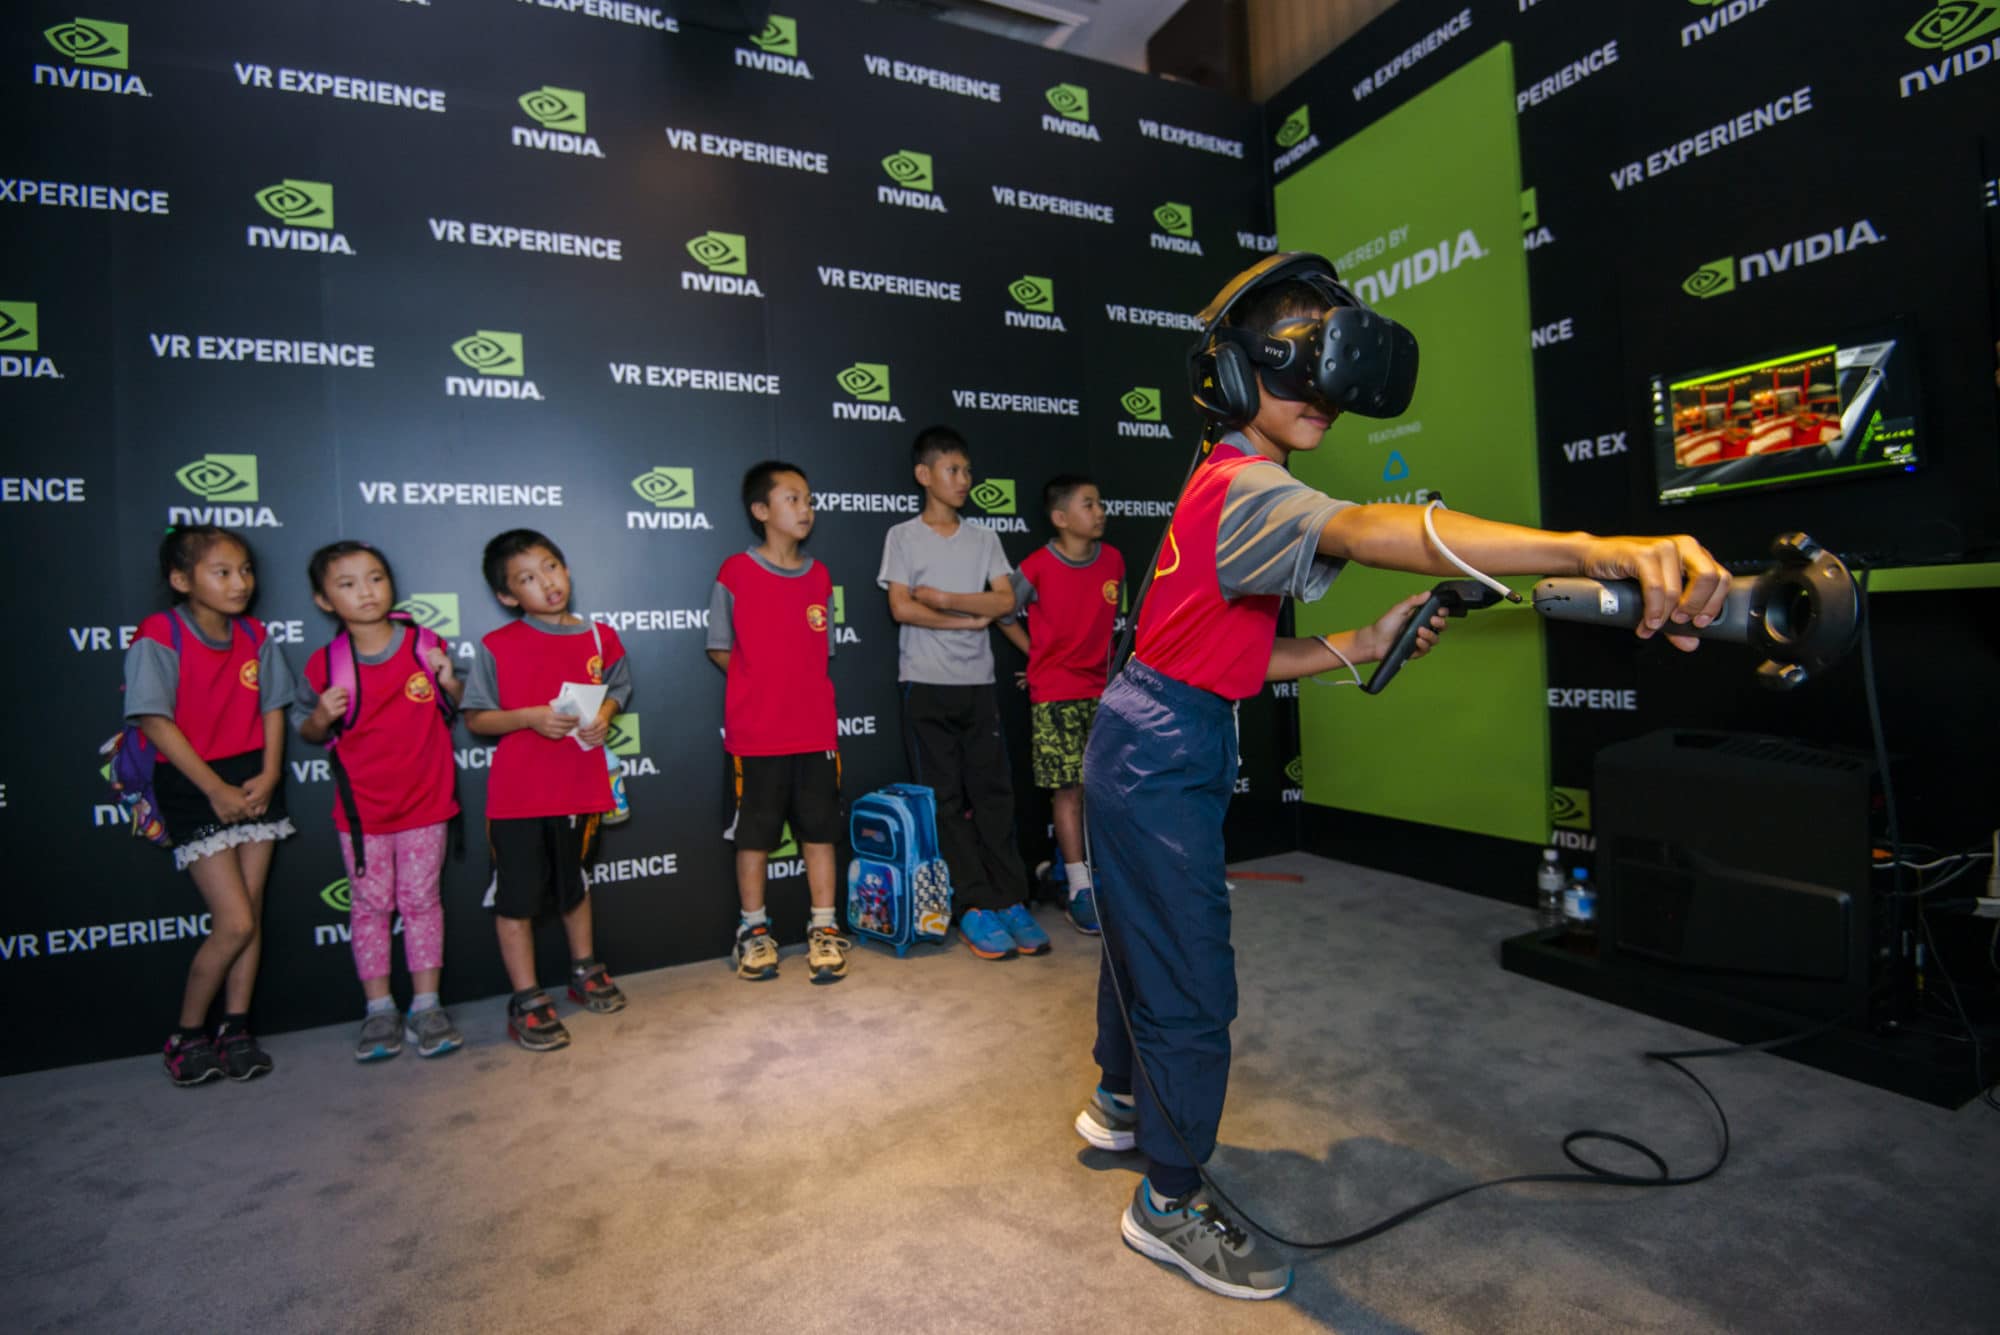 欢迎来到funhouse：参加台北国际电脑展览会的年轻粉丝尝试体验 NVIDIA 的VR Funhouse。